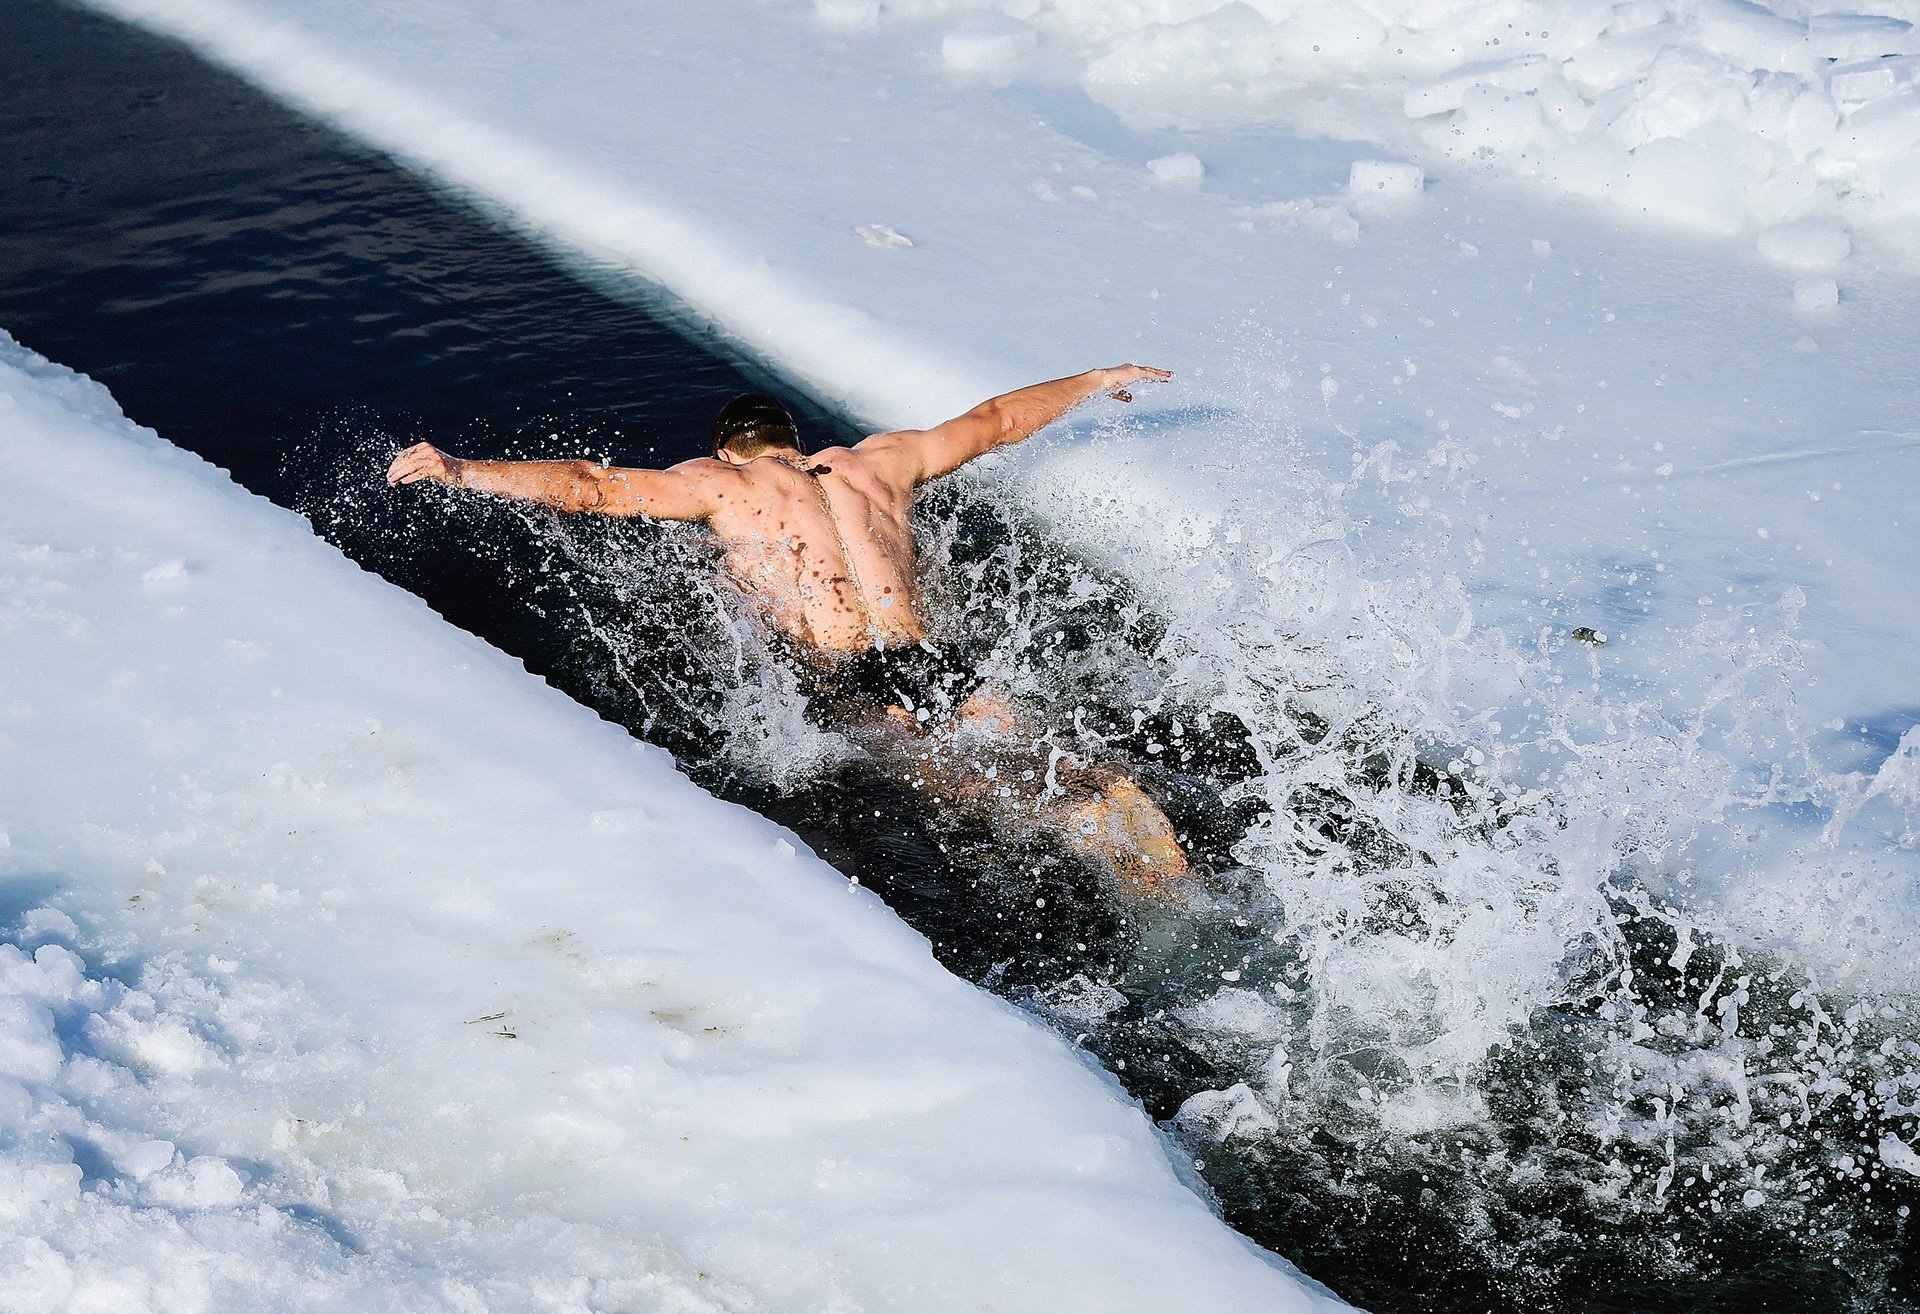 Само купание. Зимнее купание. Моржевание закаливание. Купаться в снегу. Купание в холодной воде.